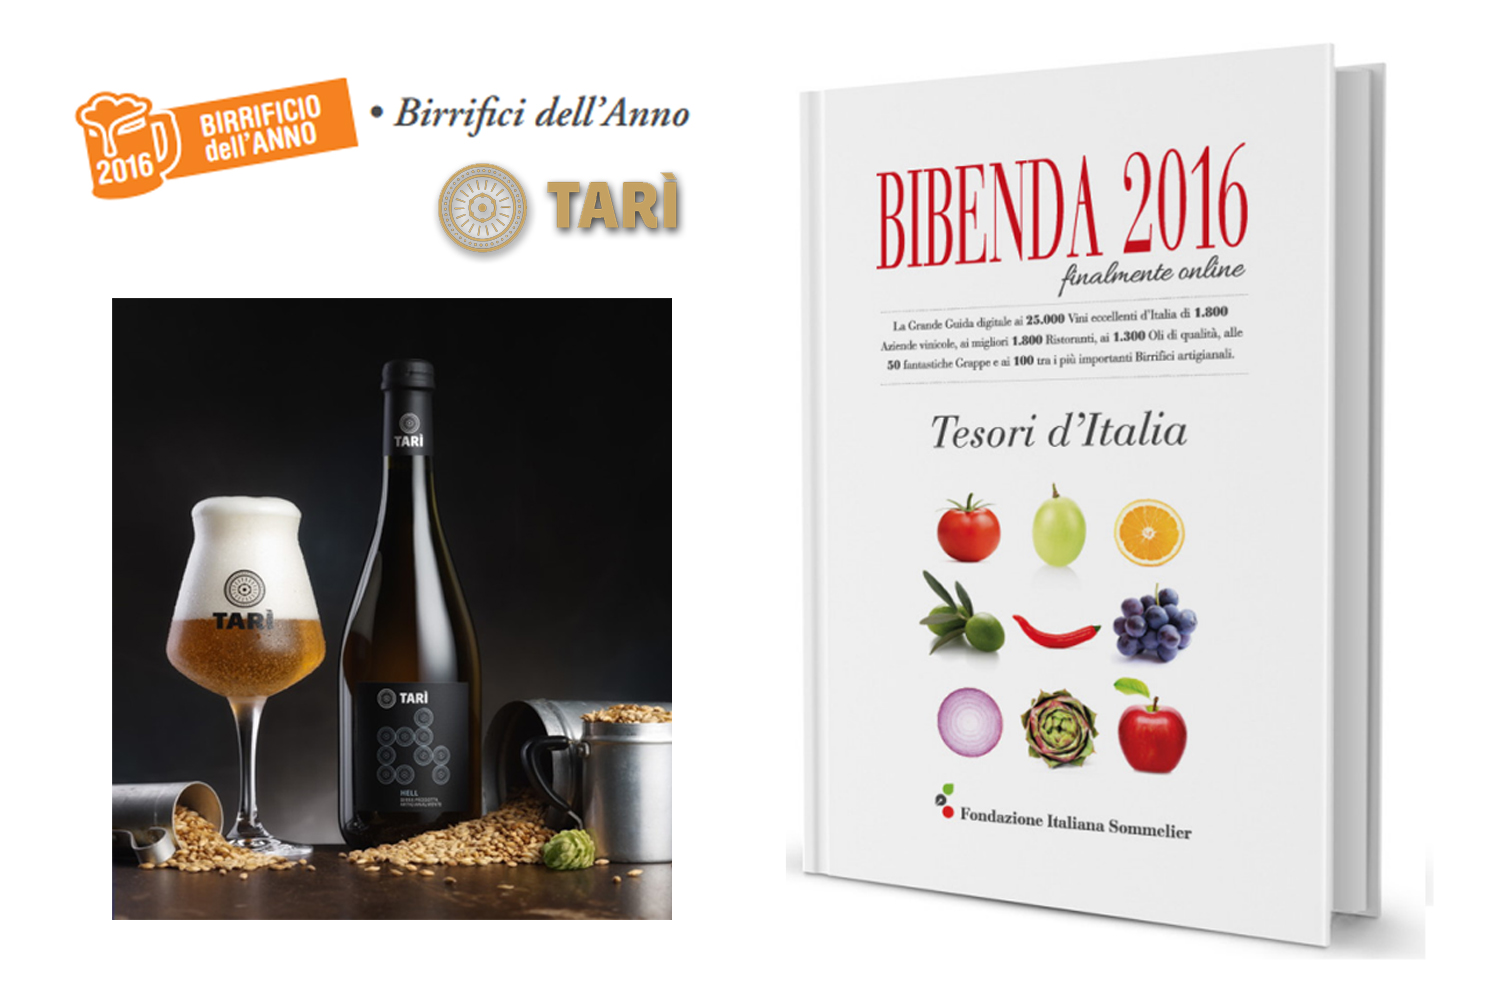 La pagina di Bibenda su Birra Tarì